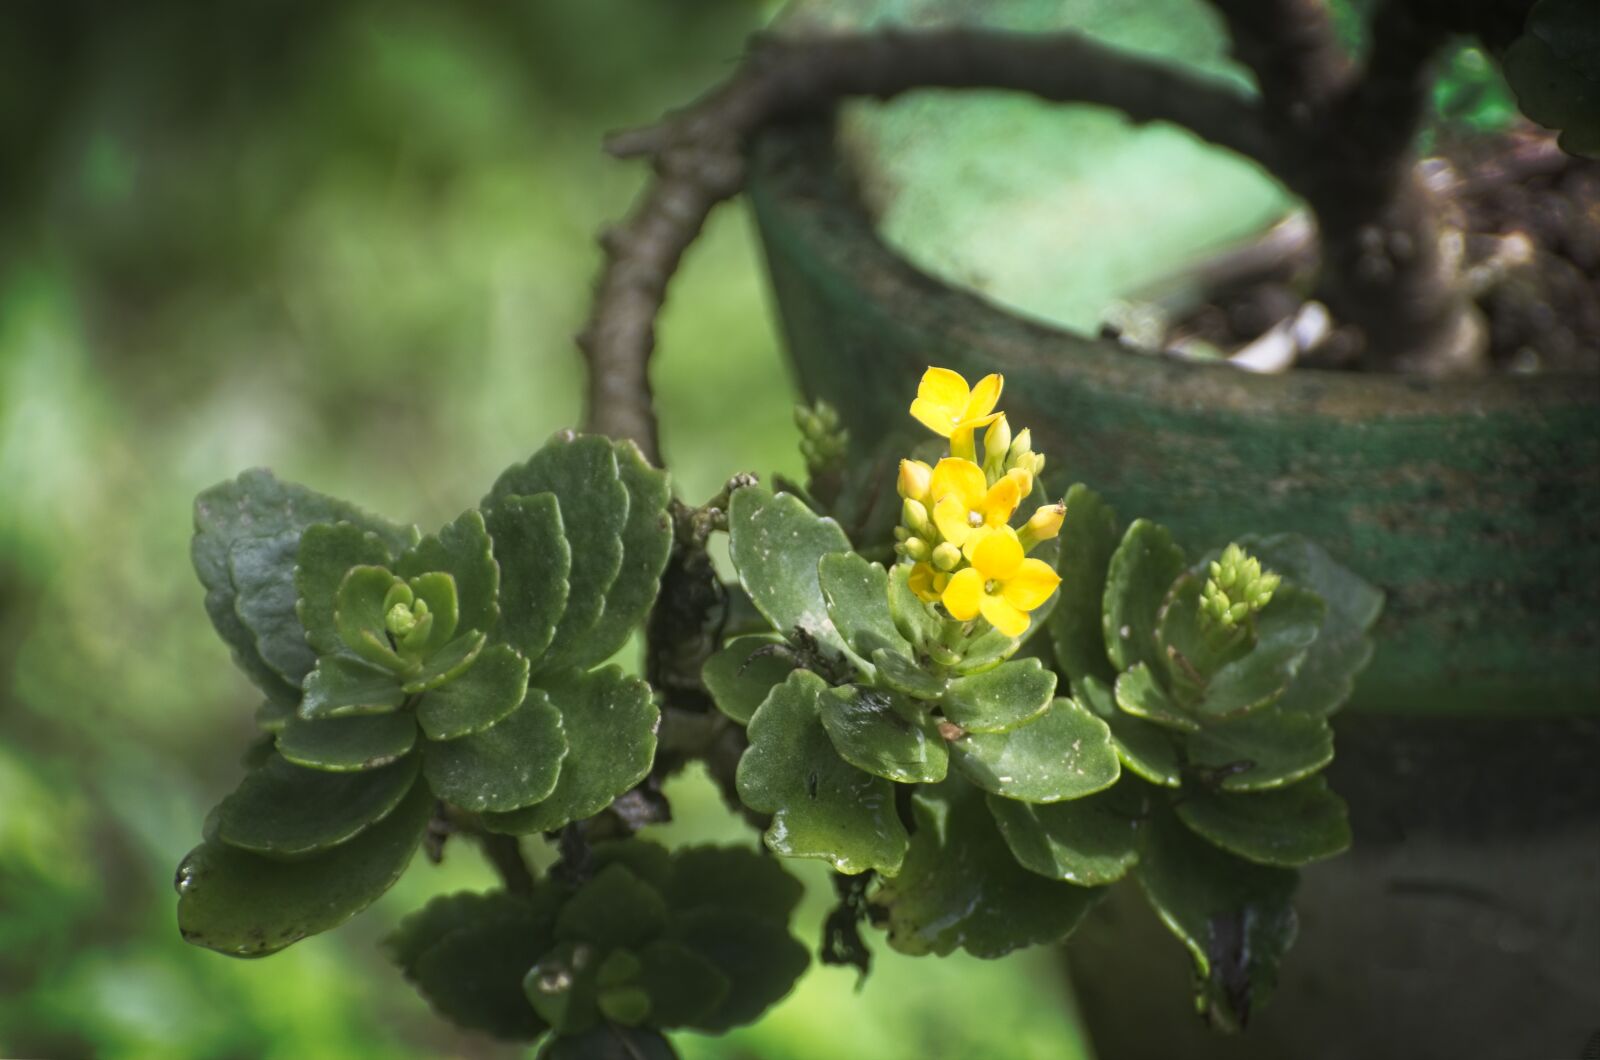 Nikon AF-S VR Zoom-Nikkor 70-300mm f/4.5-5.6G IF-ED sample photo. Plant, flower, green photography